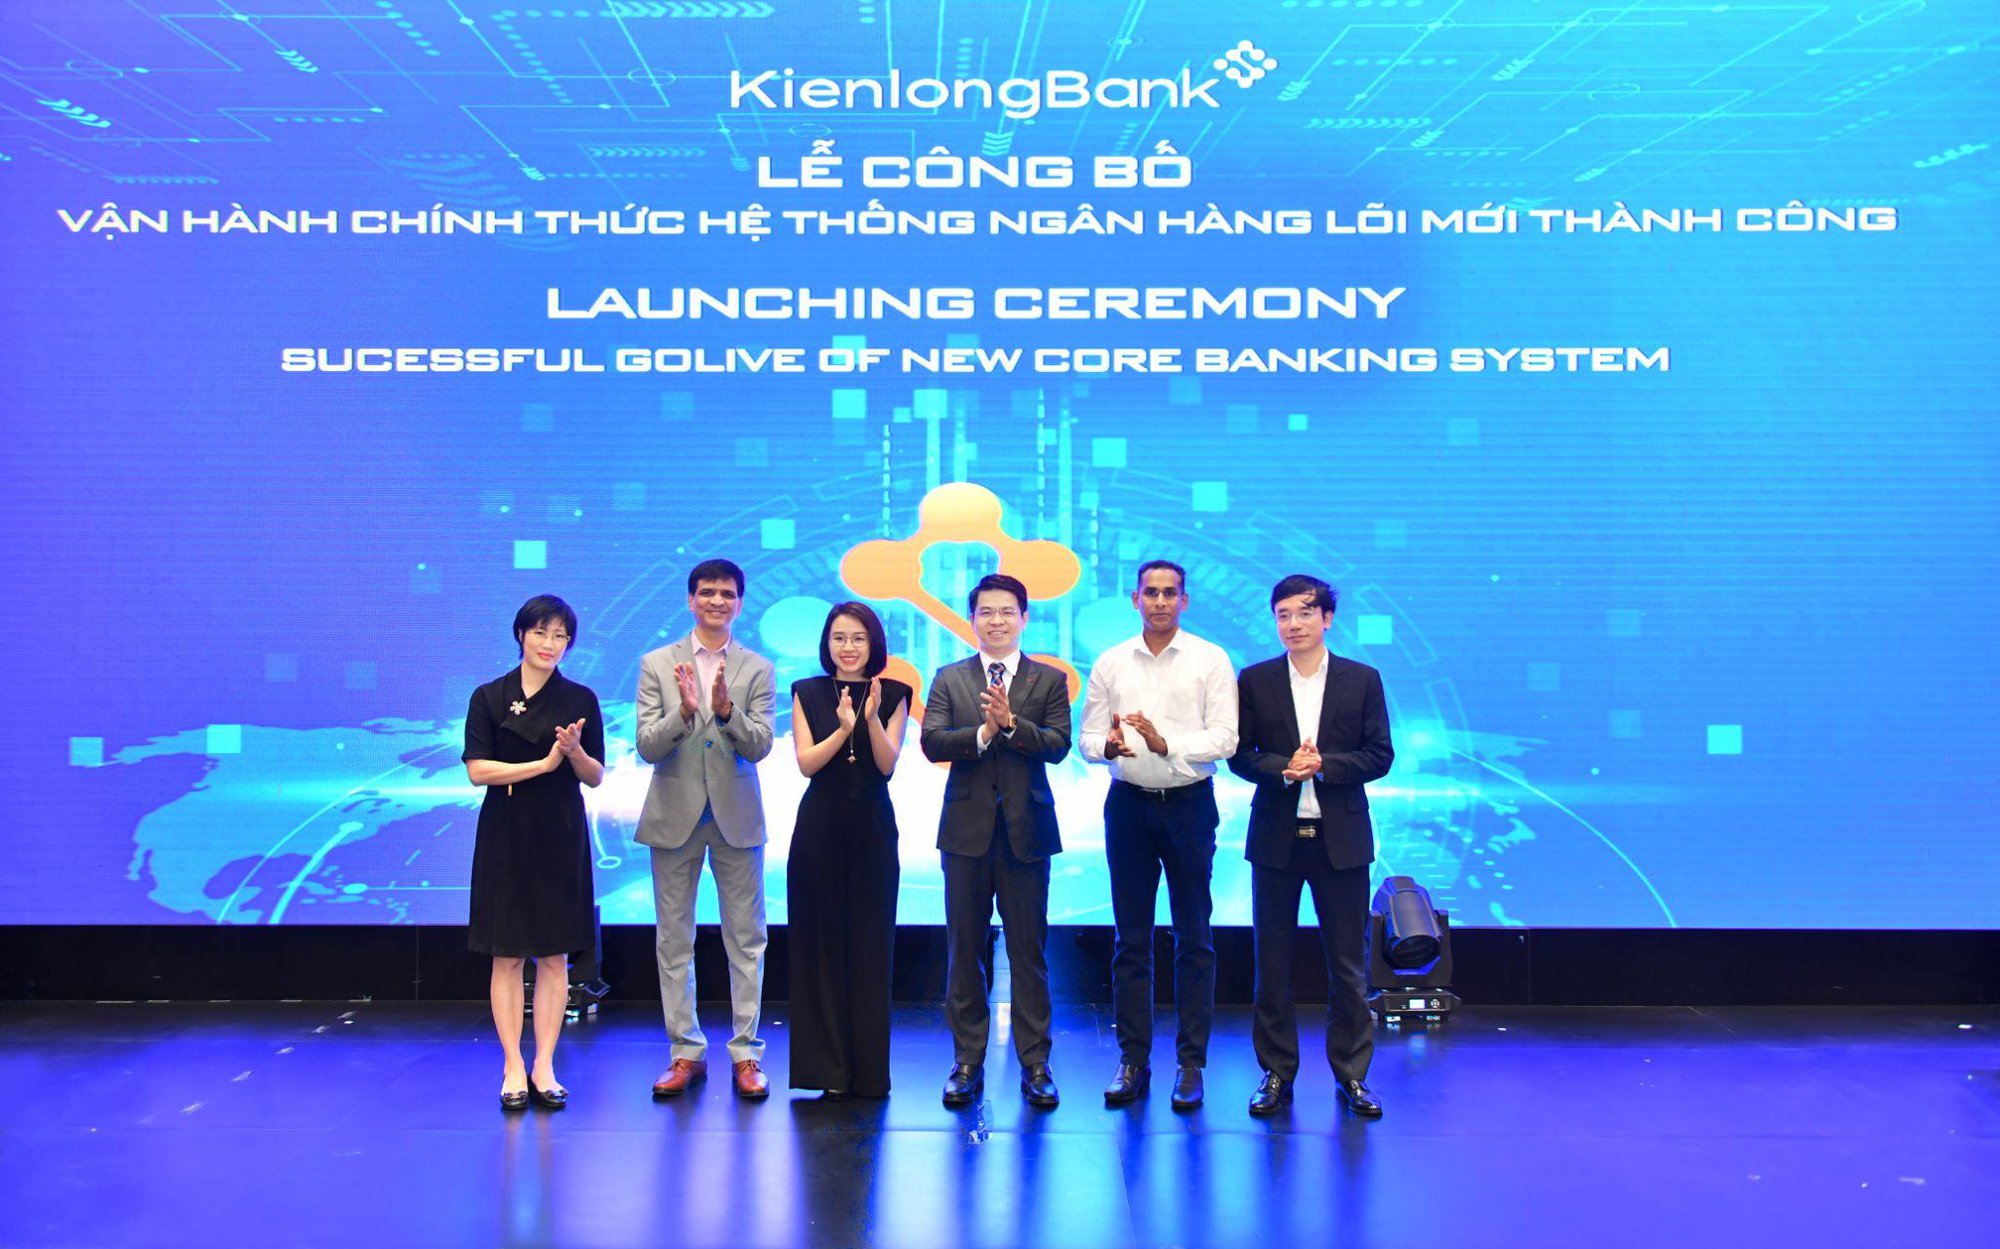 KienlongBank vận hành chính thức hệ thống ngân hàng lõi mới hiện đại, nâng cao chất lượng dịch vụ ngân hàng - Ảnh 2.